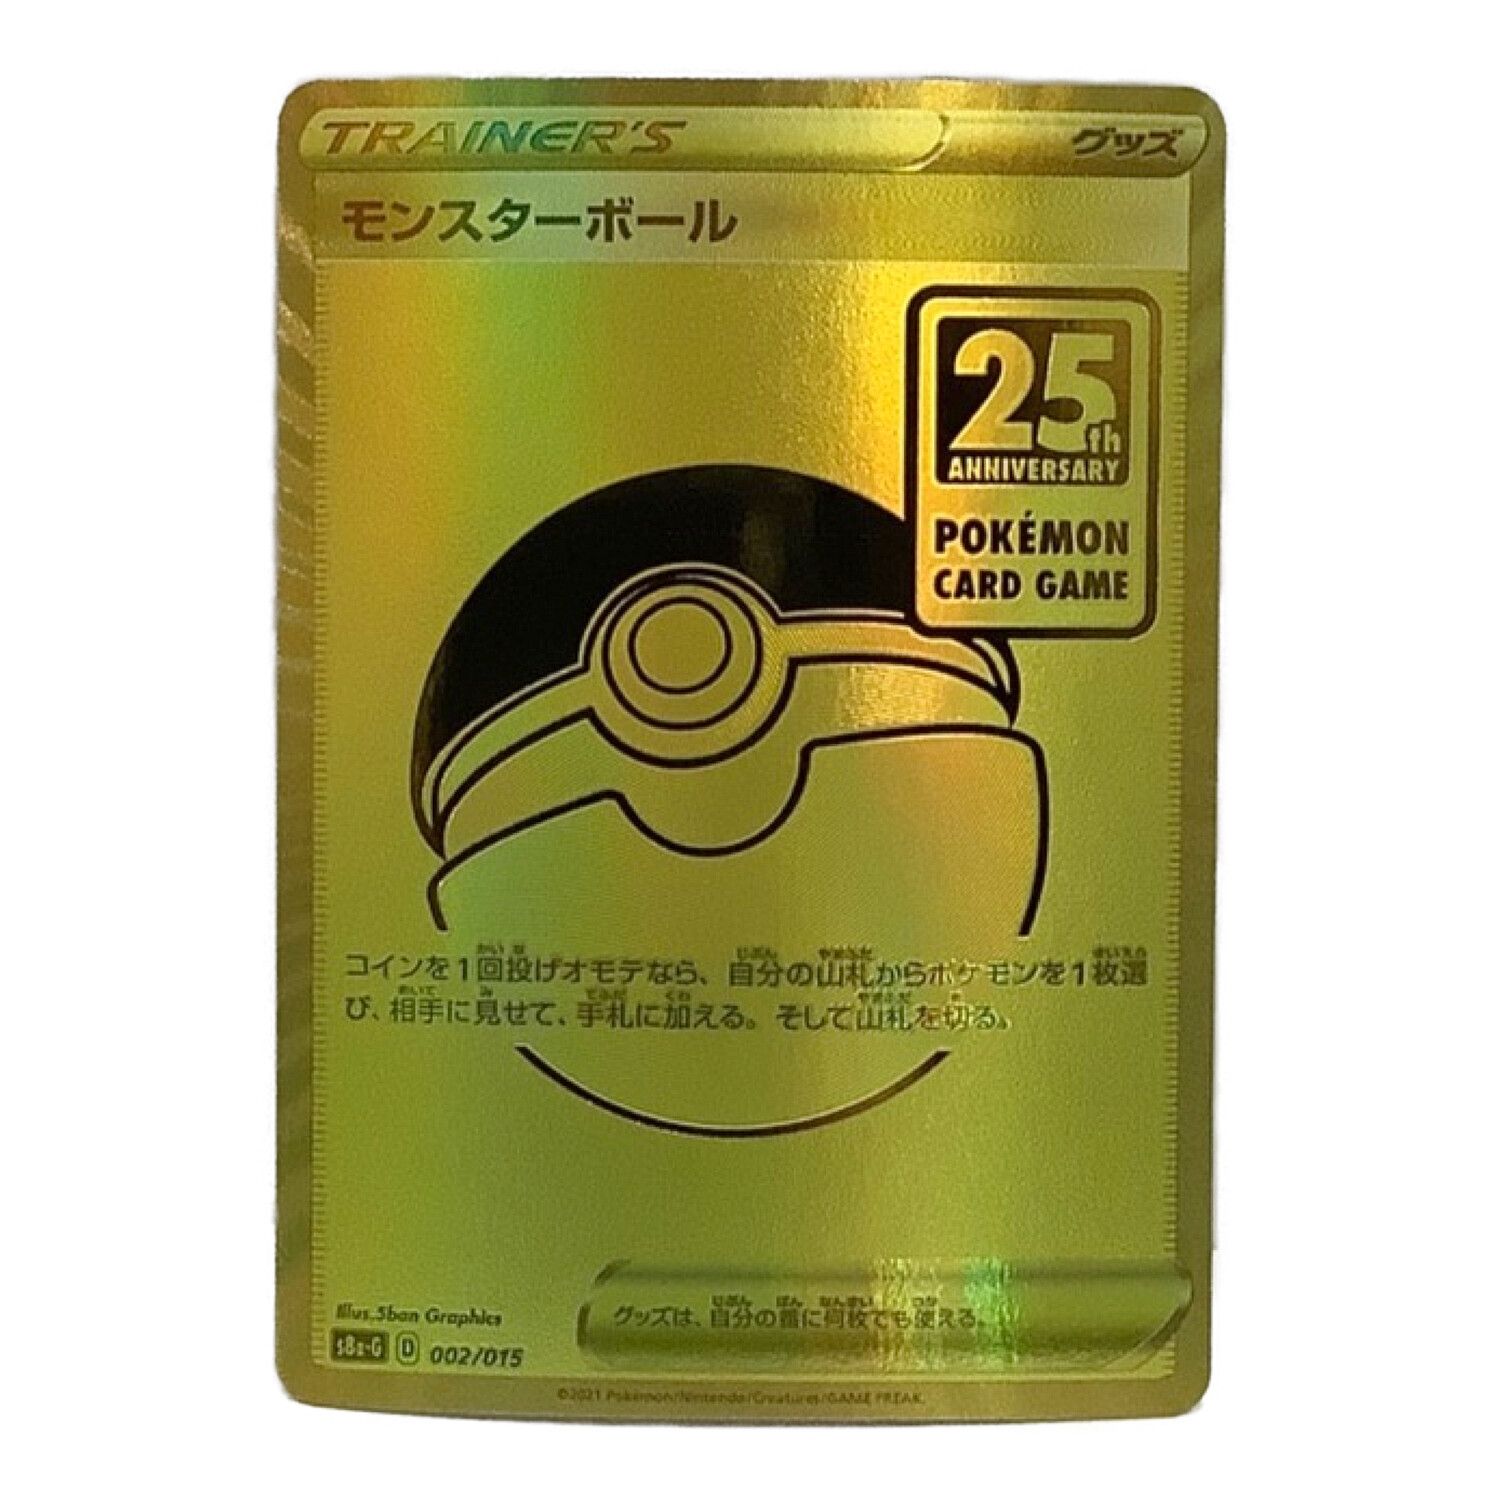 ポケモンカード 25th ANNIVERSARY GOLDEN BOX仕様 モンスターボール 